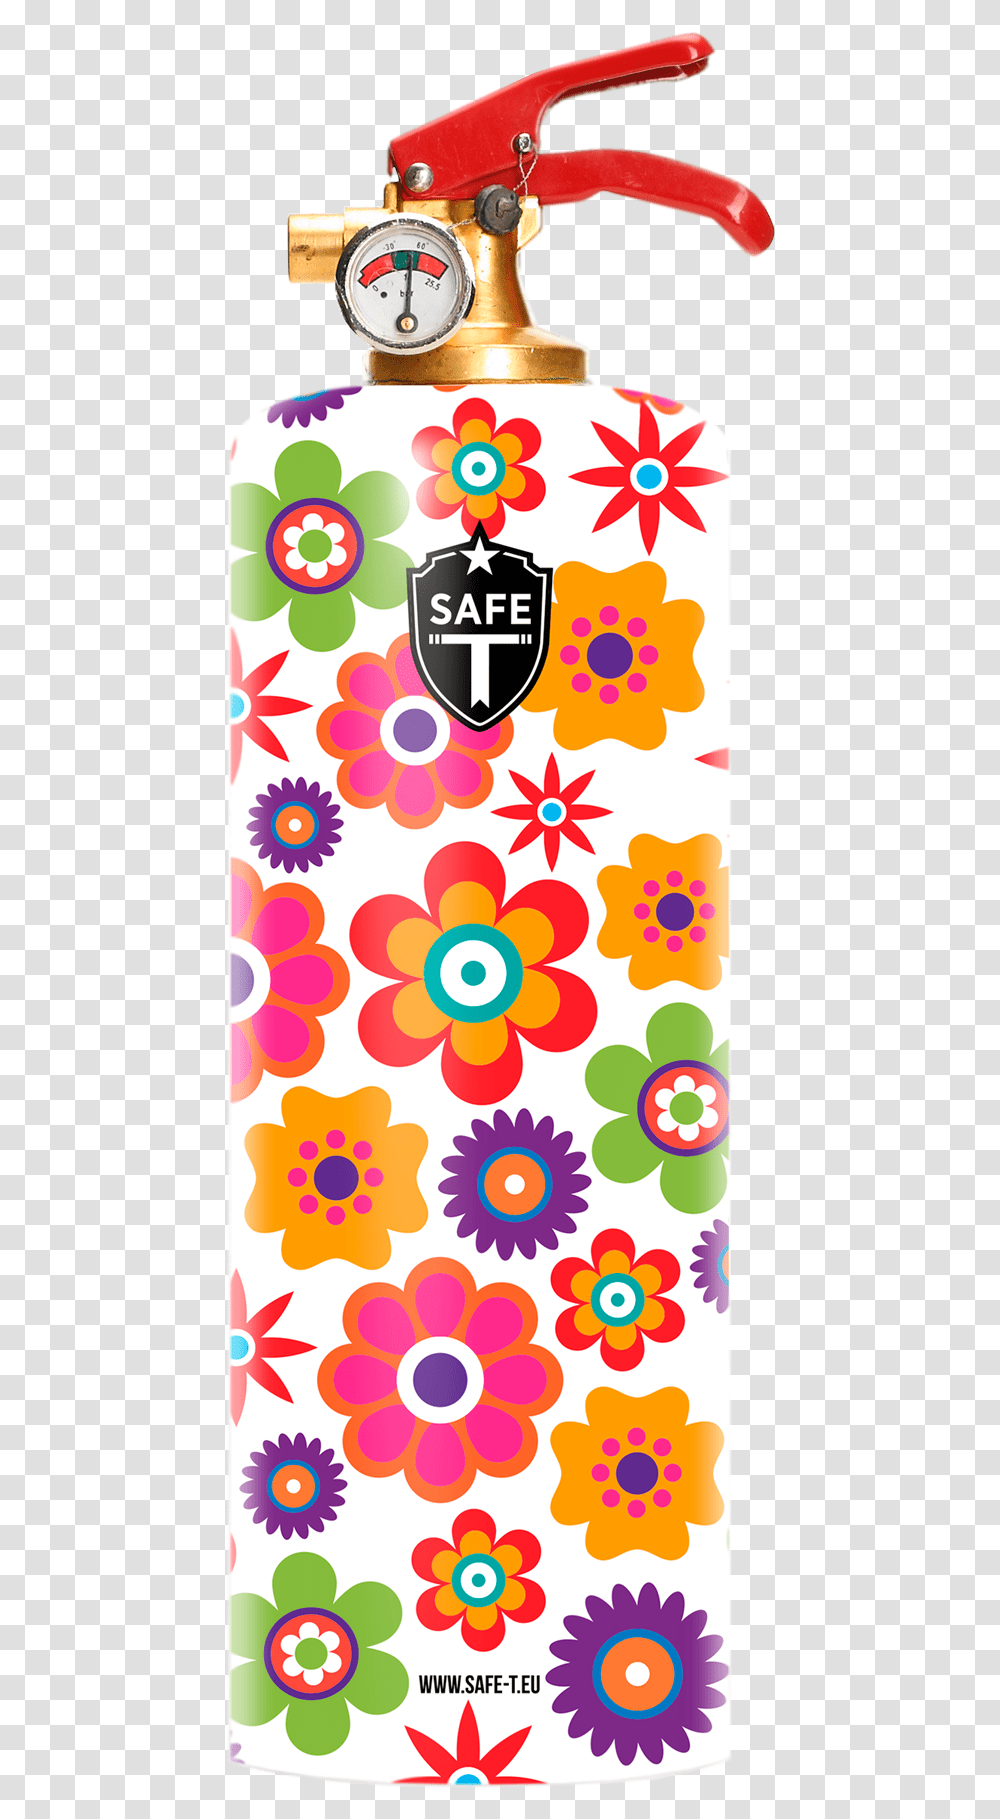 Design Fire Extinguisher Flowers Fire Extinguisher, Pattern, Floral Design Transparent Png